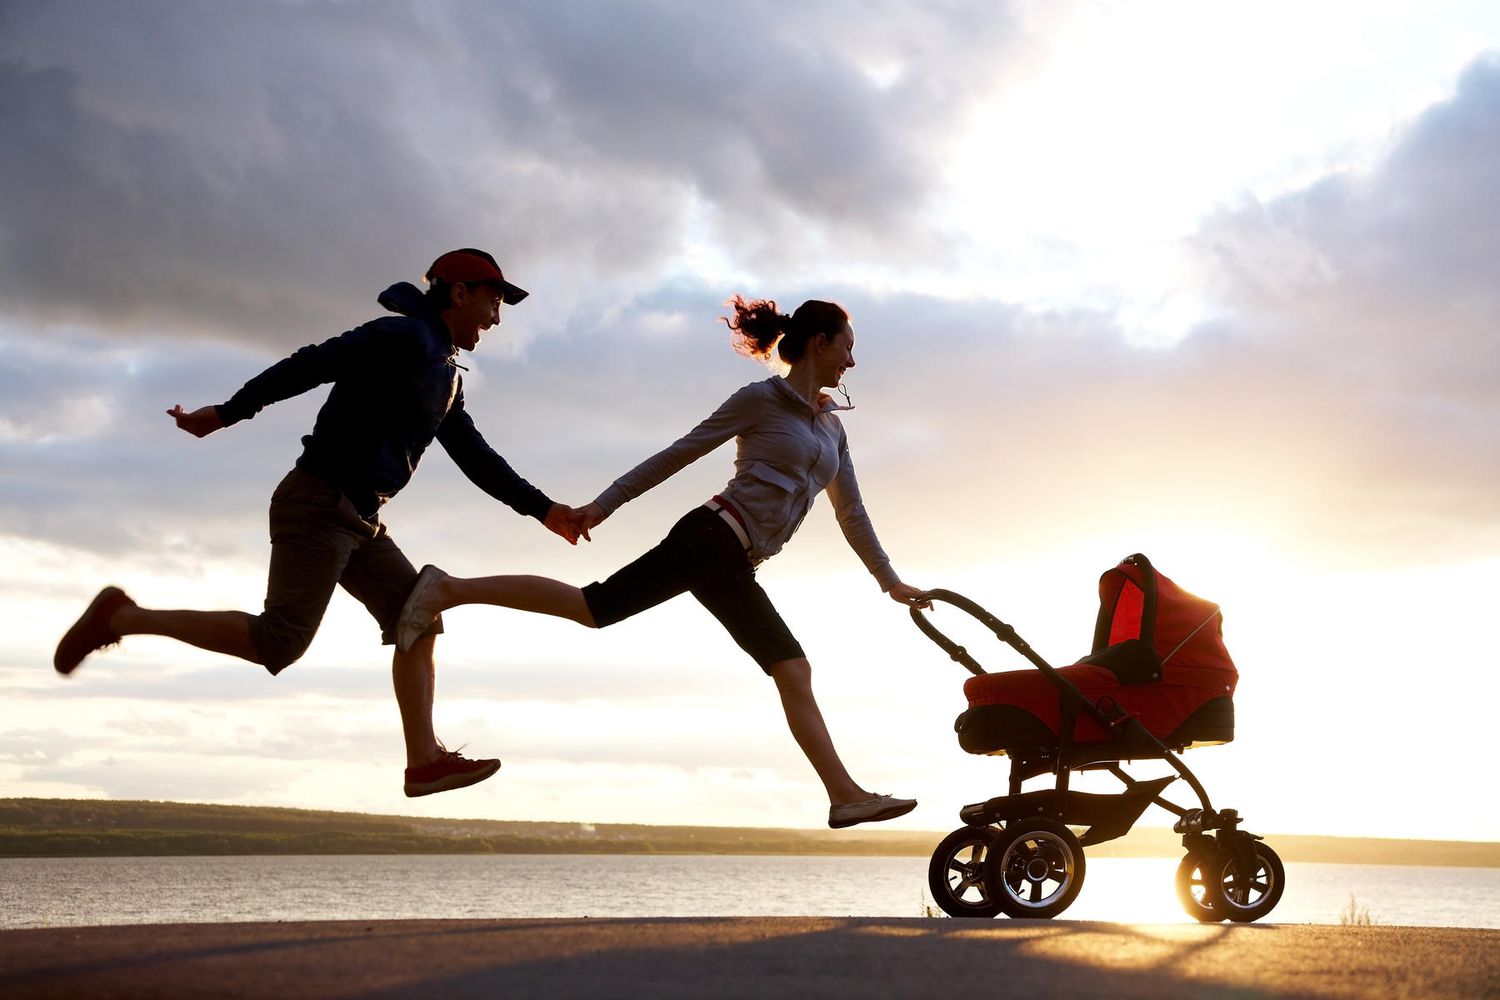 jogging stroller for infants under 6 months